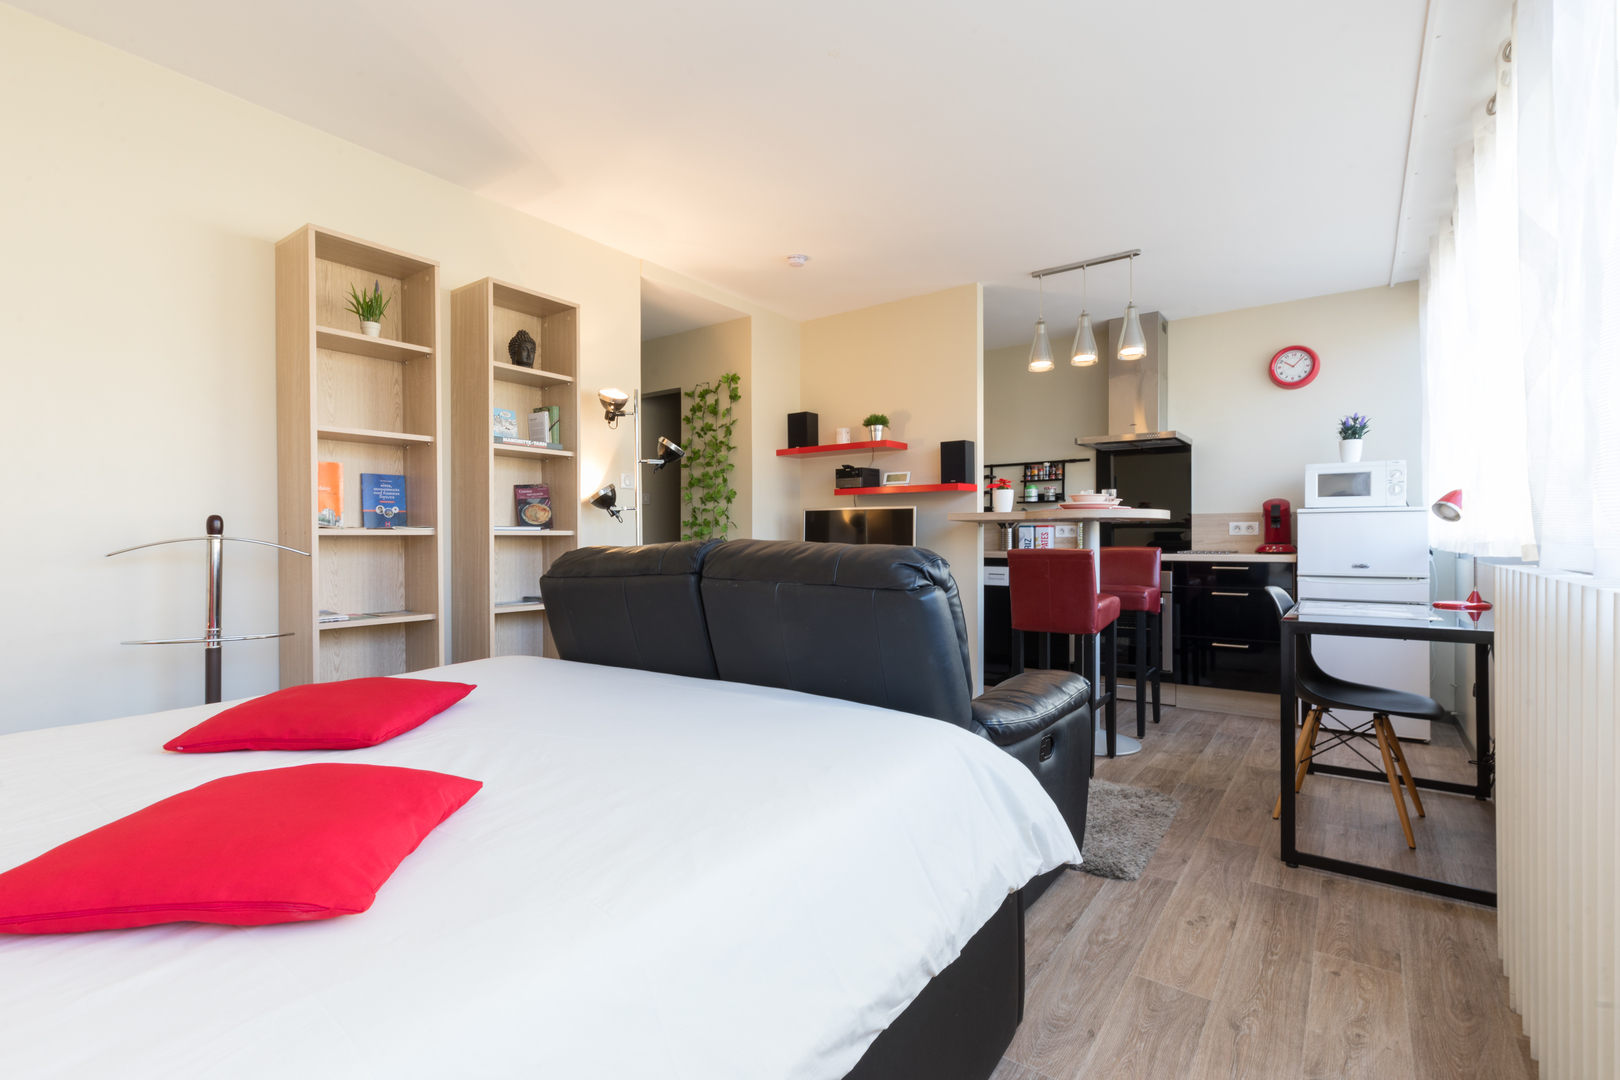 Homki - Vente Appartement  de 30.0 m² à Chambéry 73000